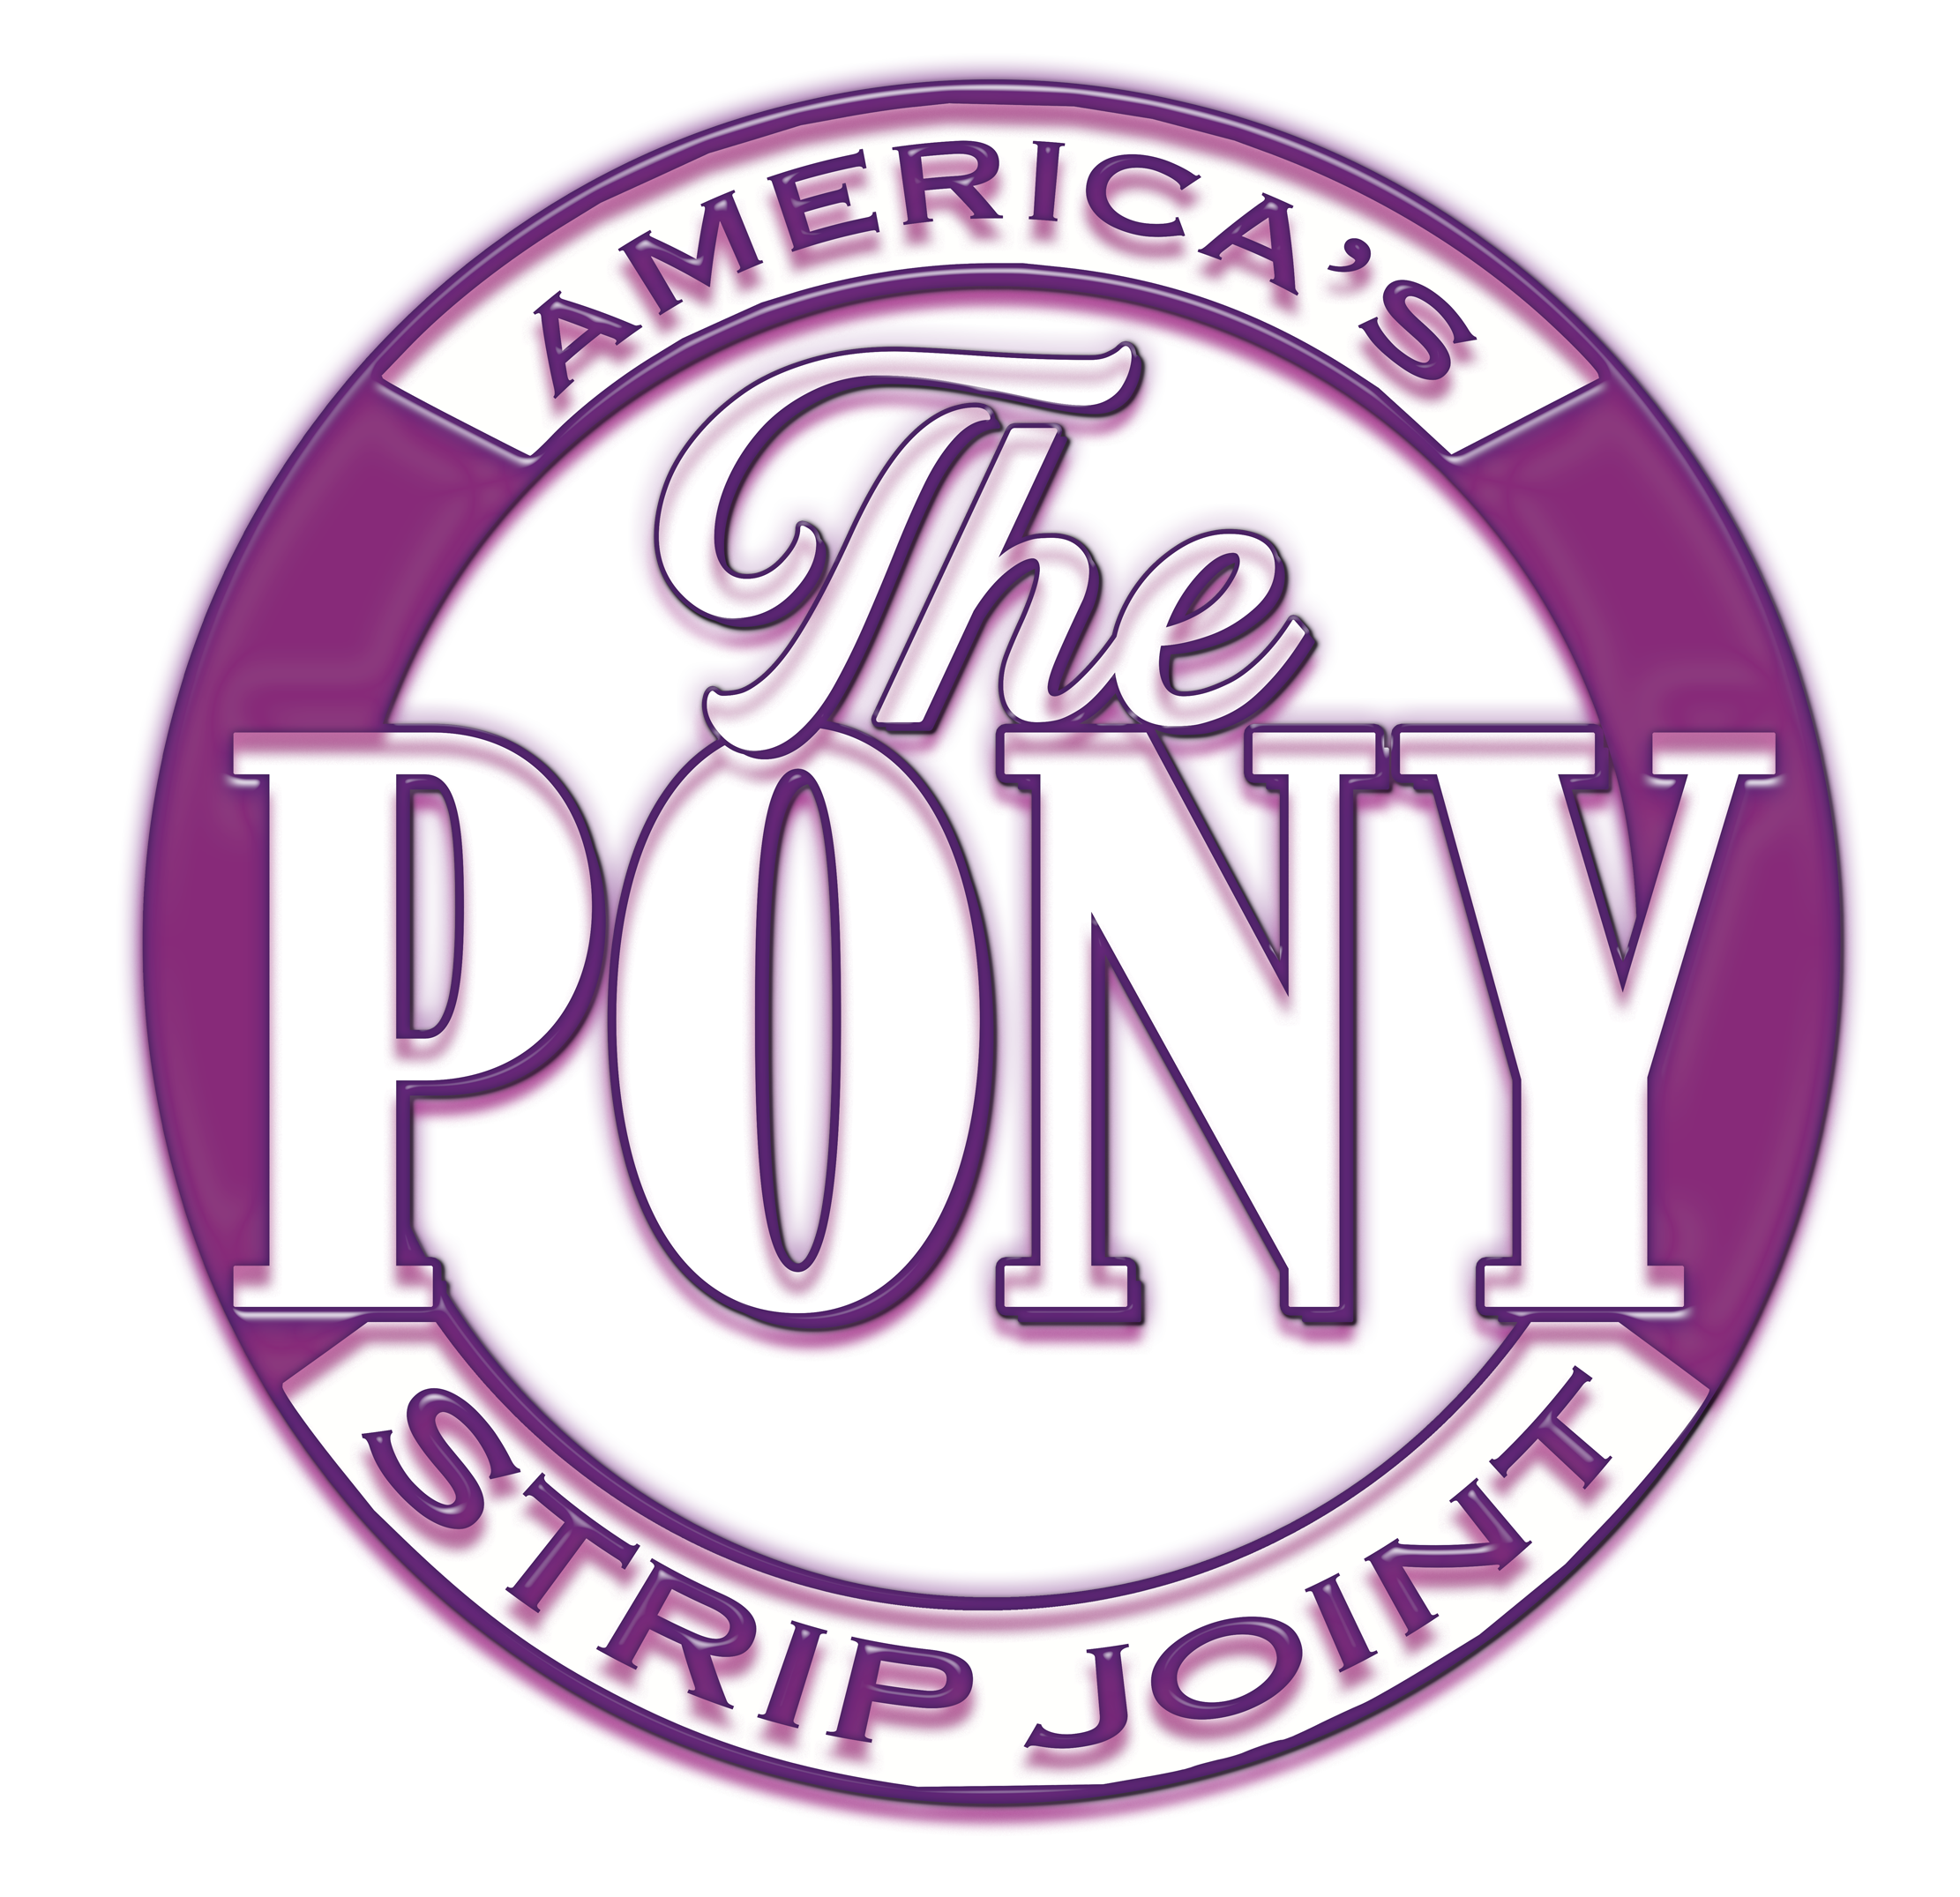 The Pony Pensacola